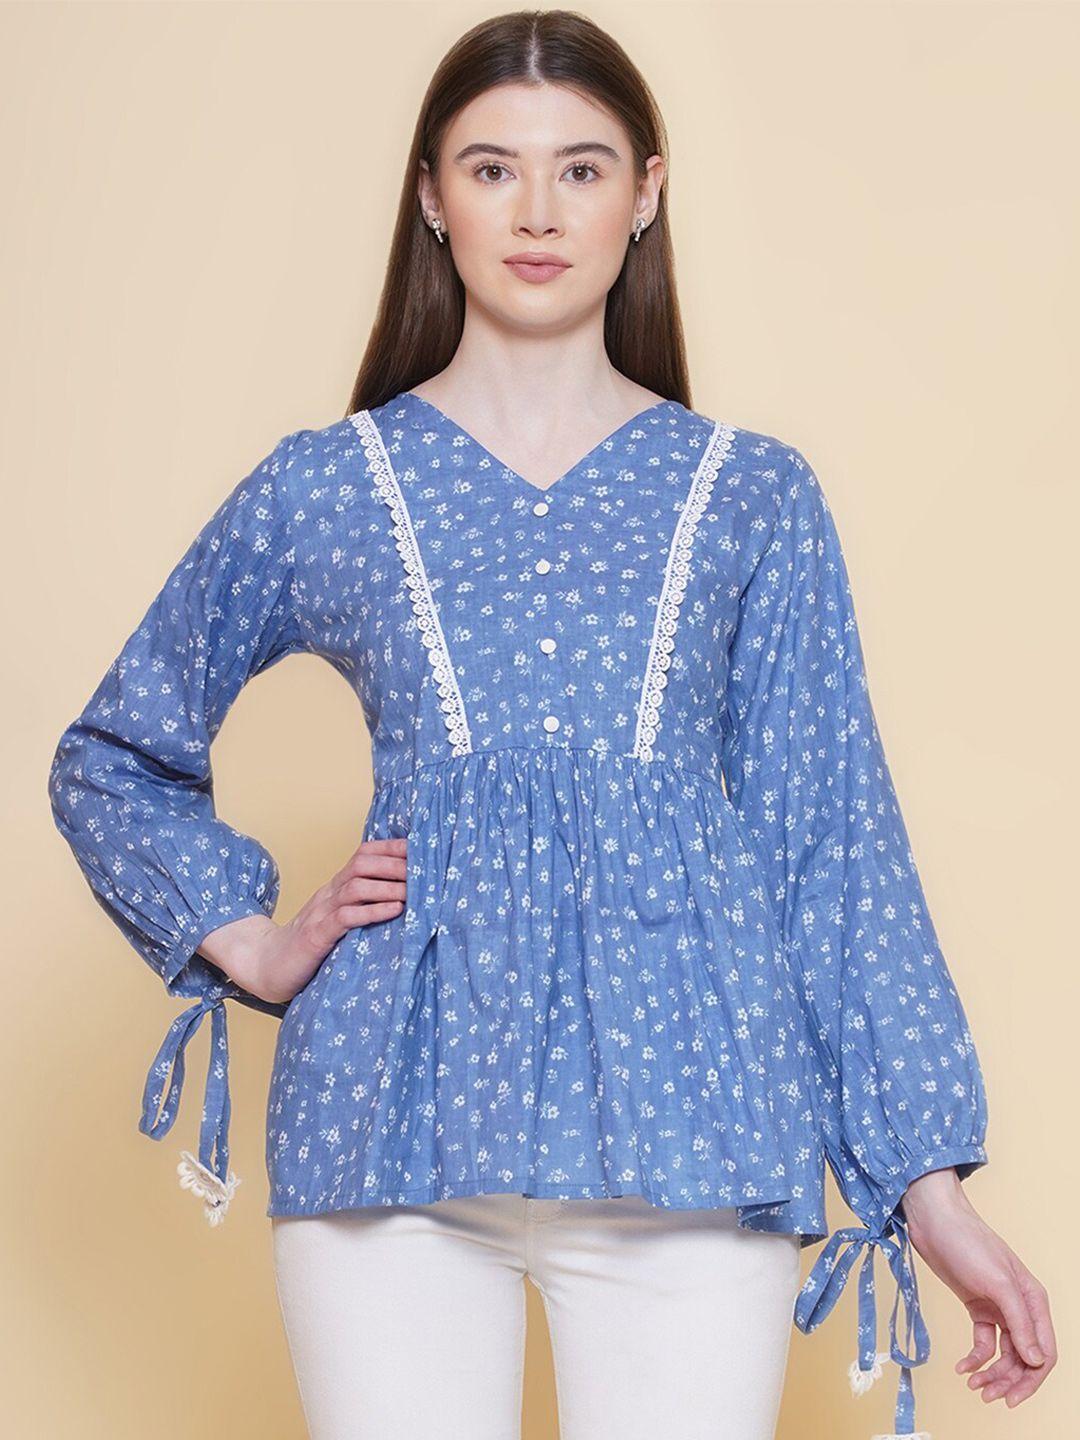 modish-couture-blue-floral-print-cotton-top